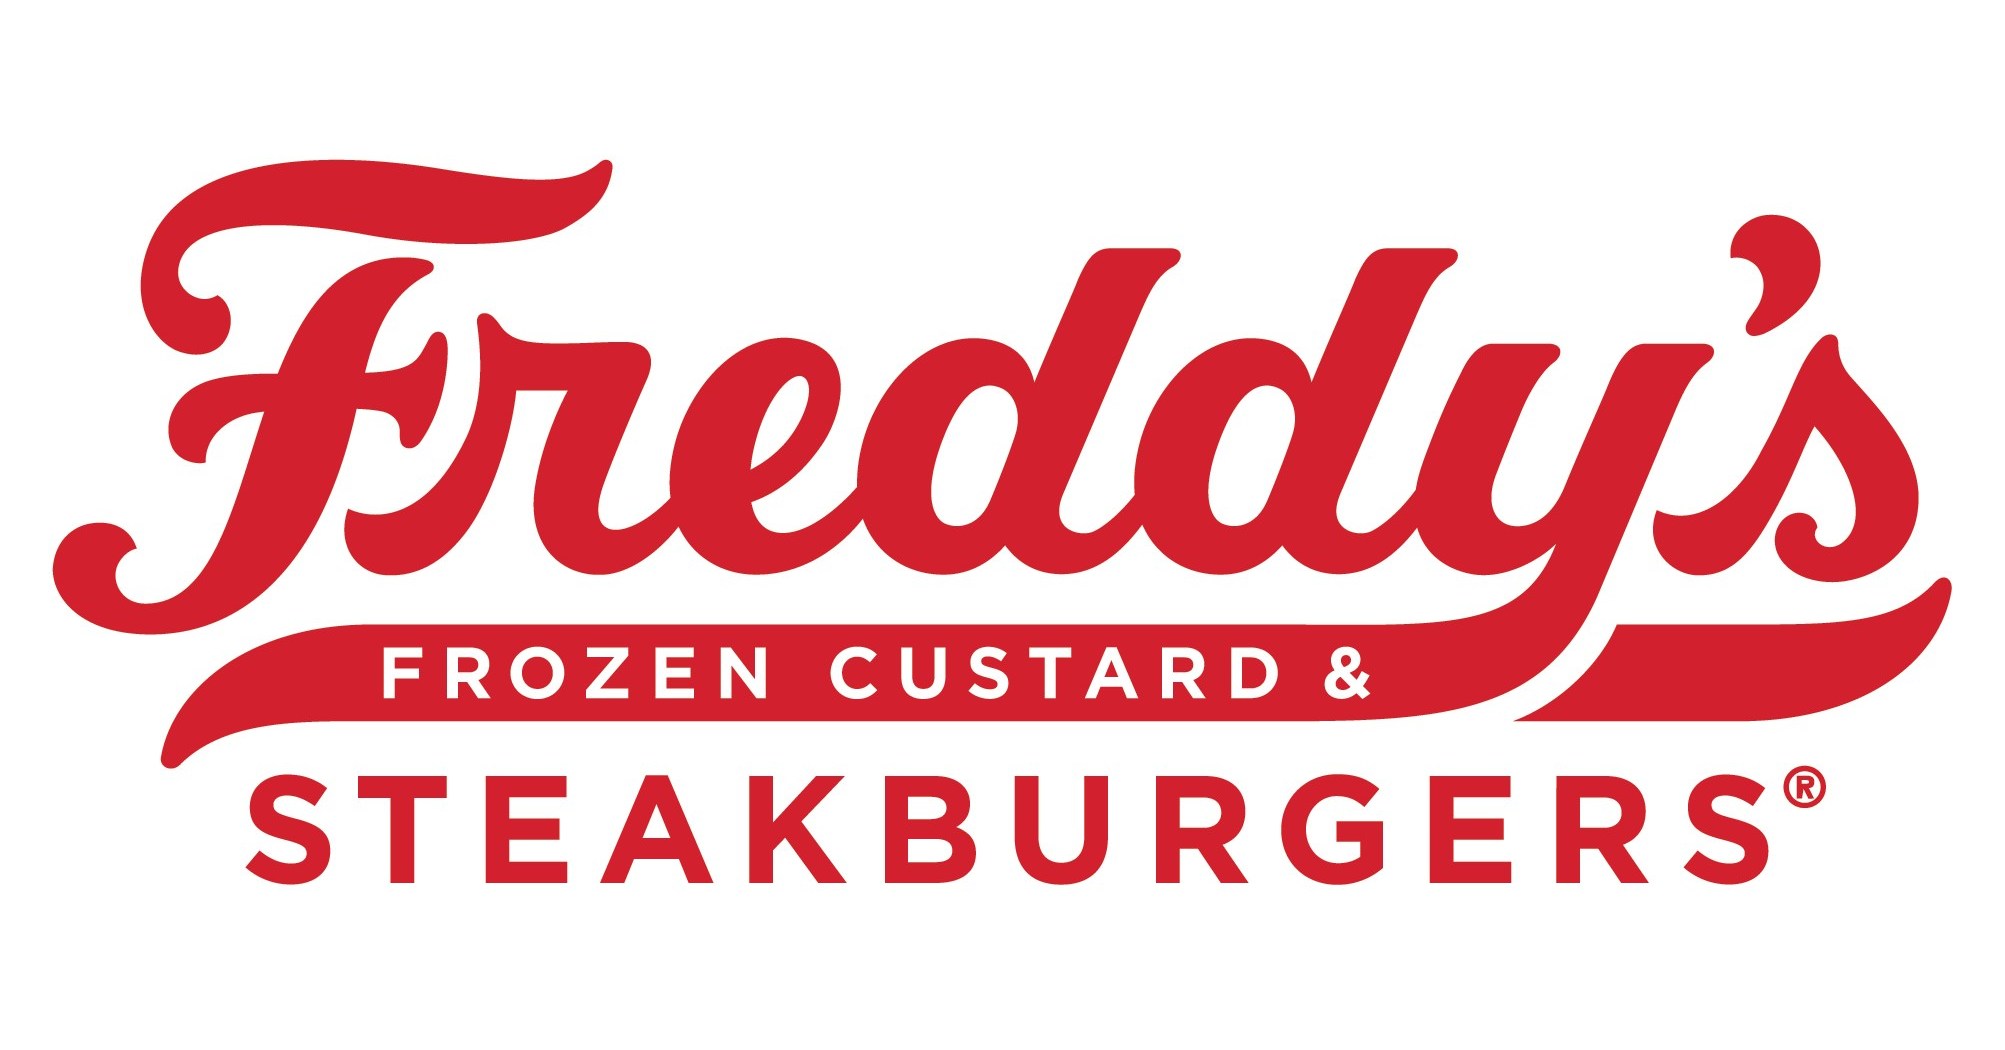 Freddy's Frozen Custard & Steakburgers Now in Dubai